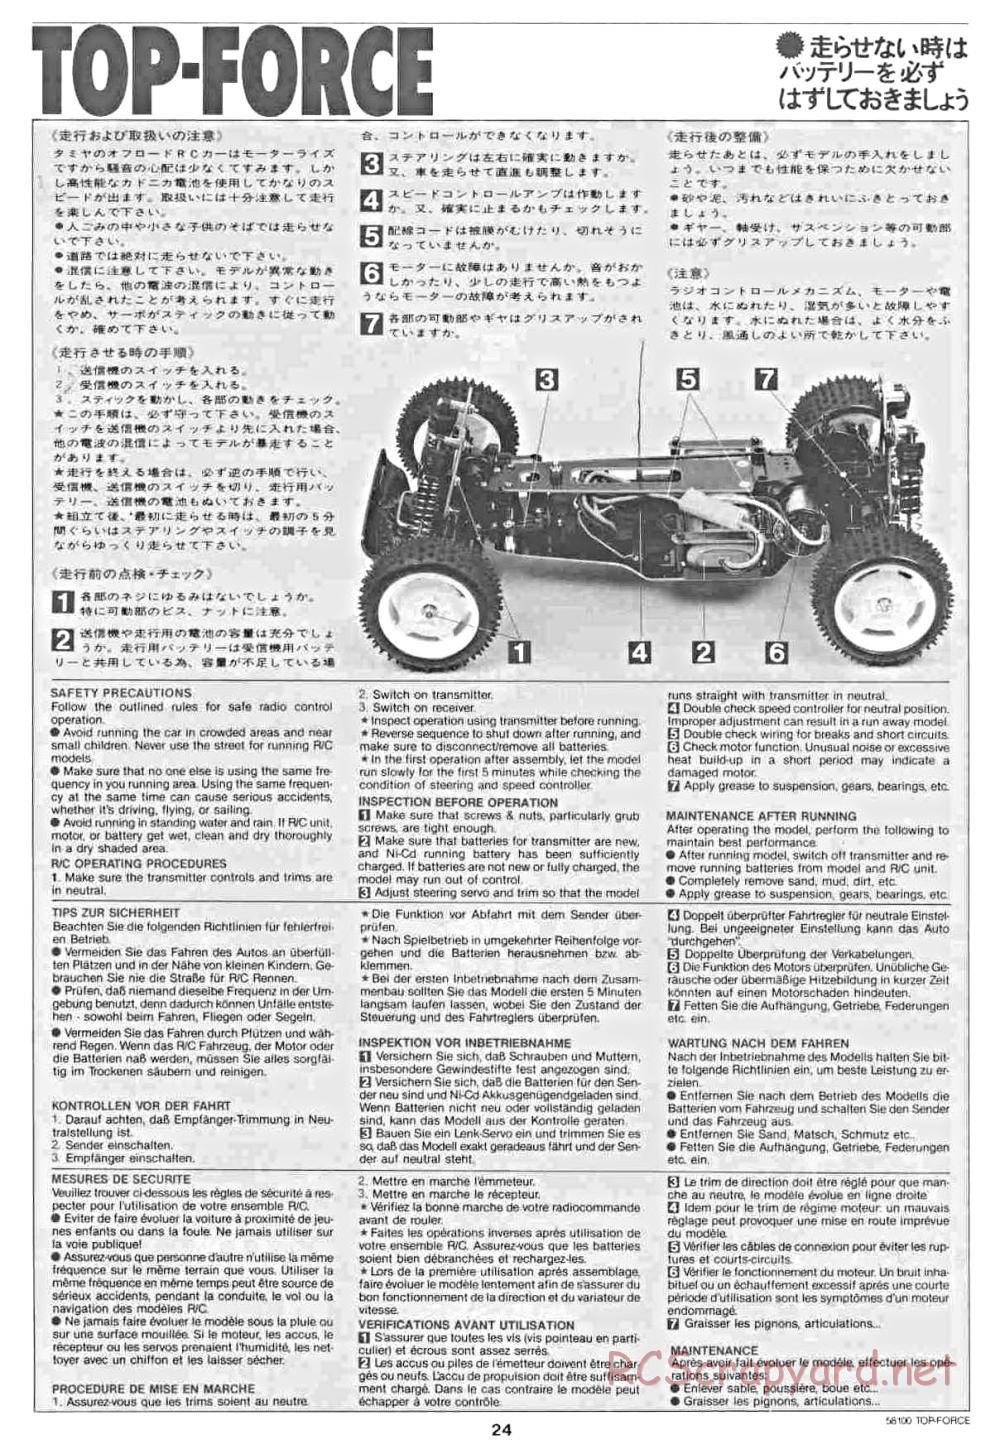 Tamiya - Top Force - 58100 - Manual - Page 24